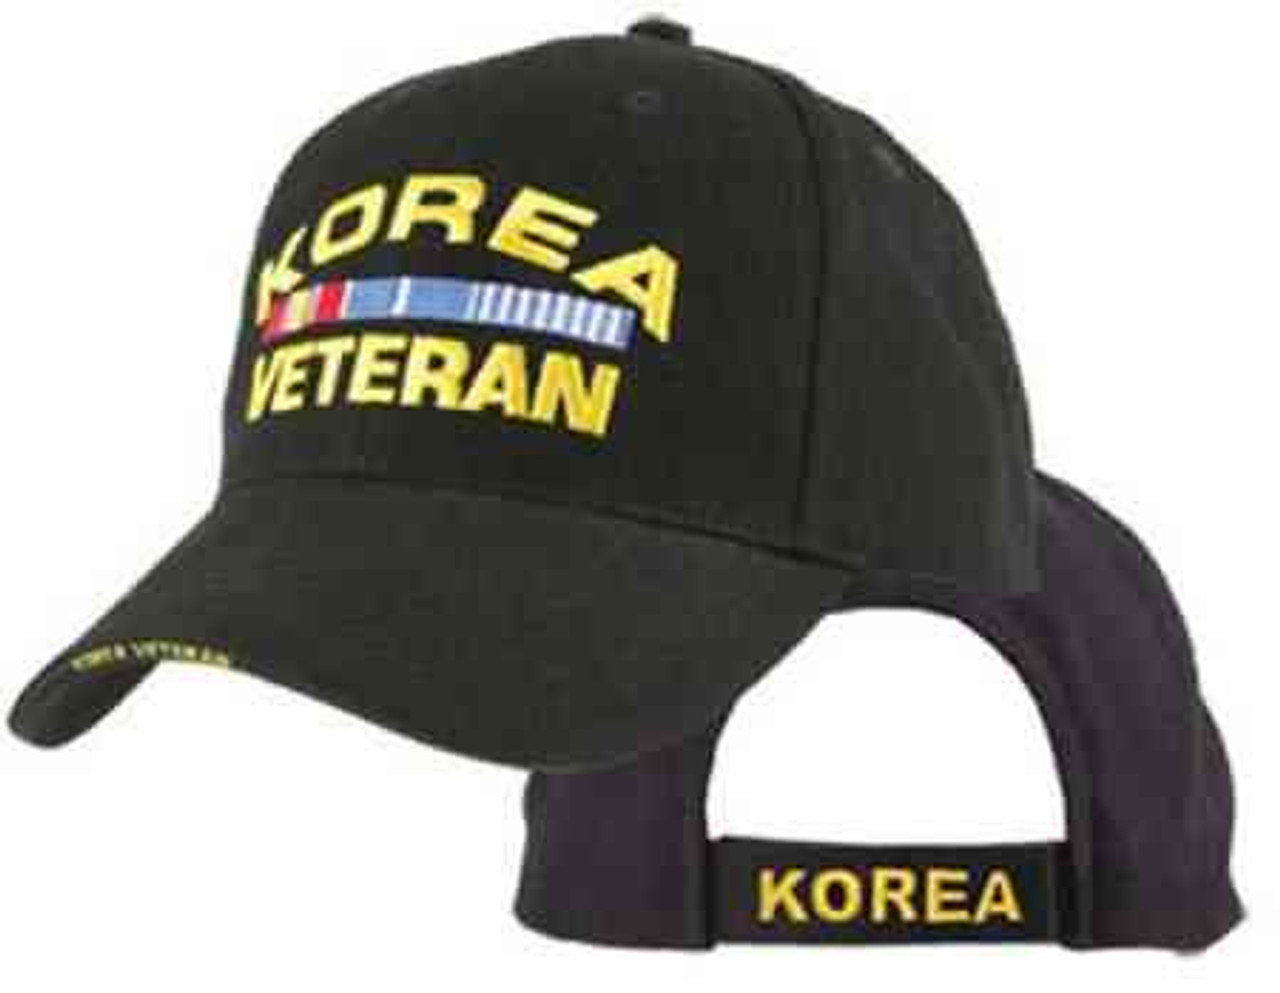 korea veteran w ribbons hat